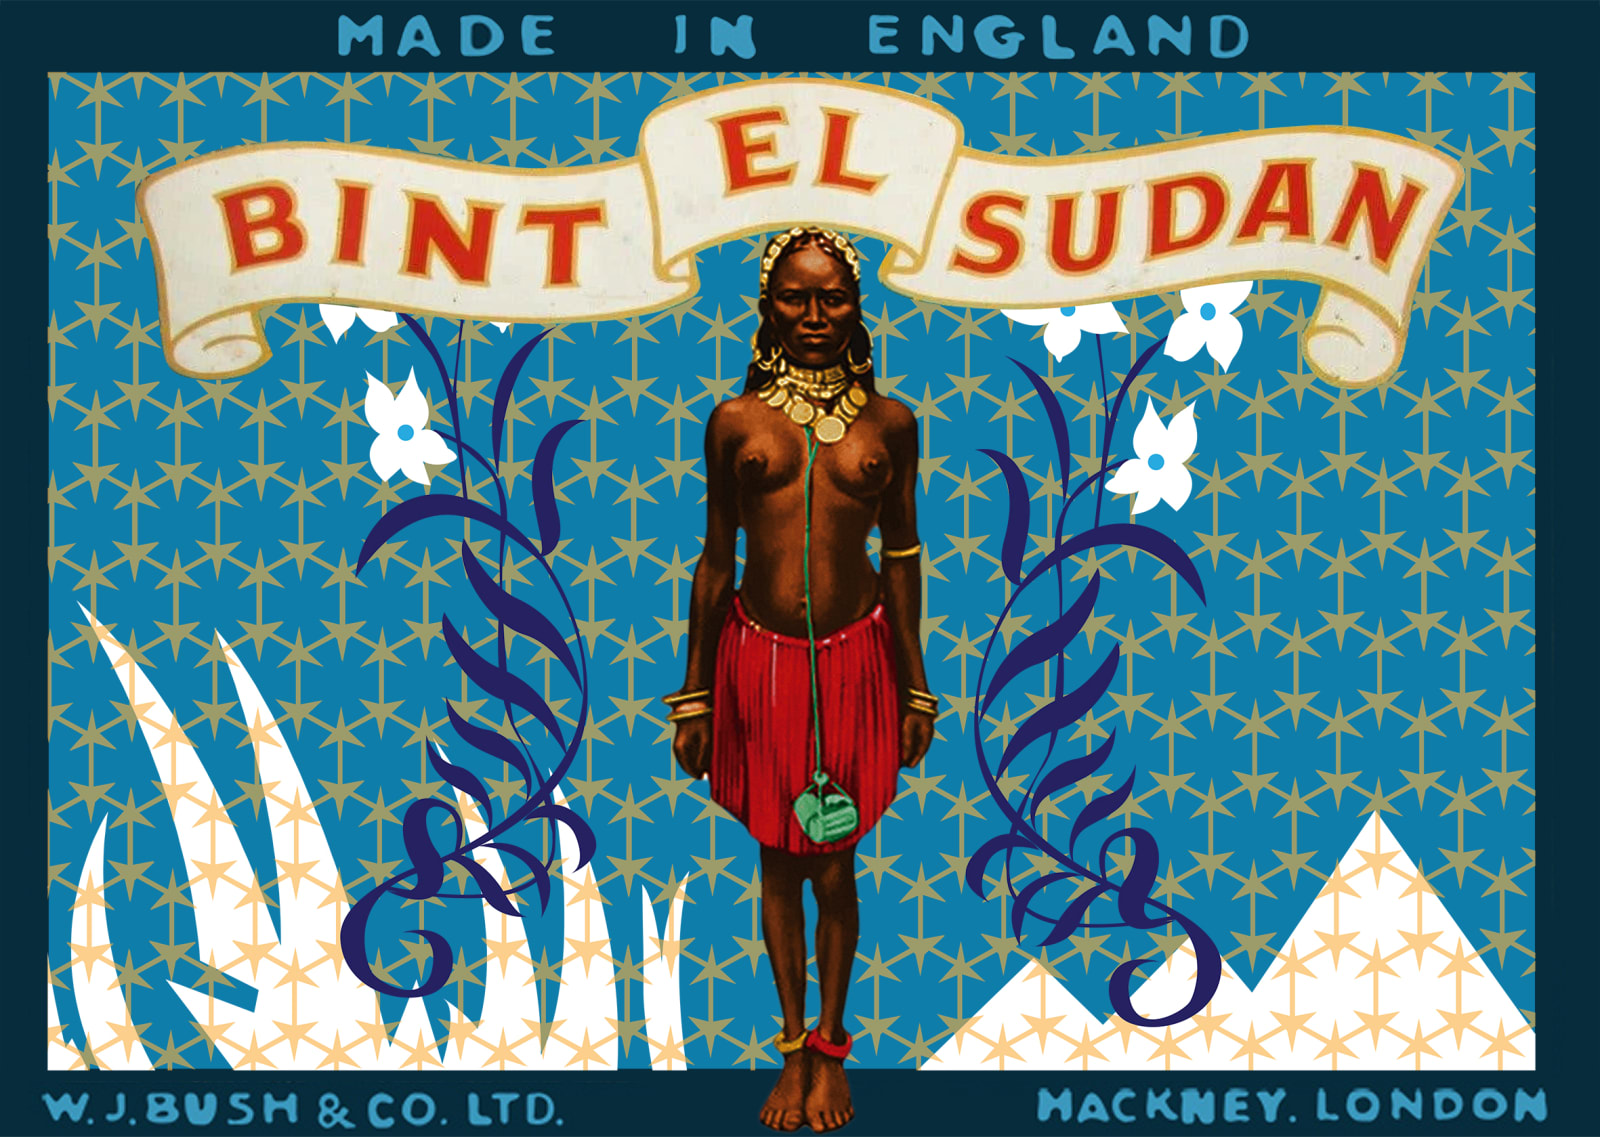 Amado Alfadni, Bint El Sudan - Made in England Lable, 2019